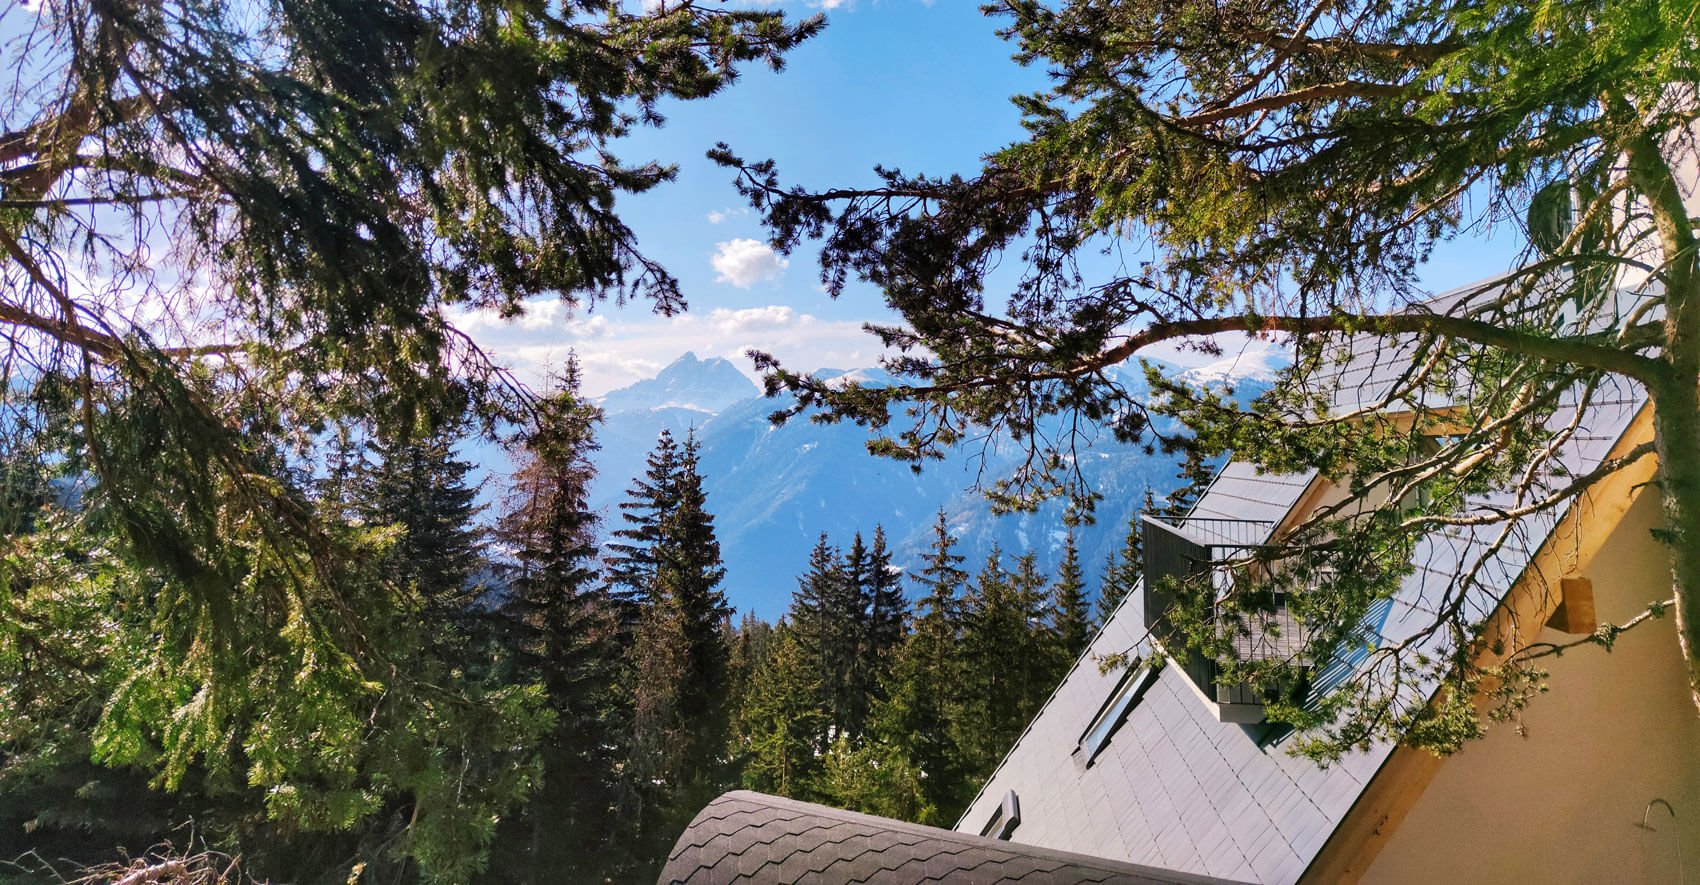  Stressfreier Urlaub im Berghüttenhotel